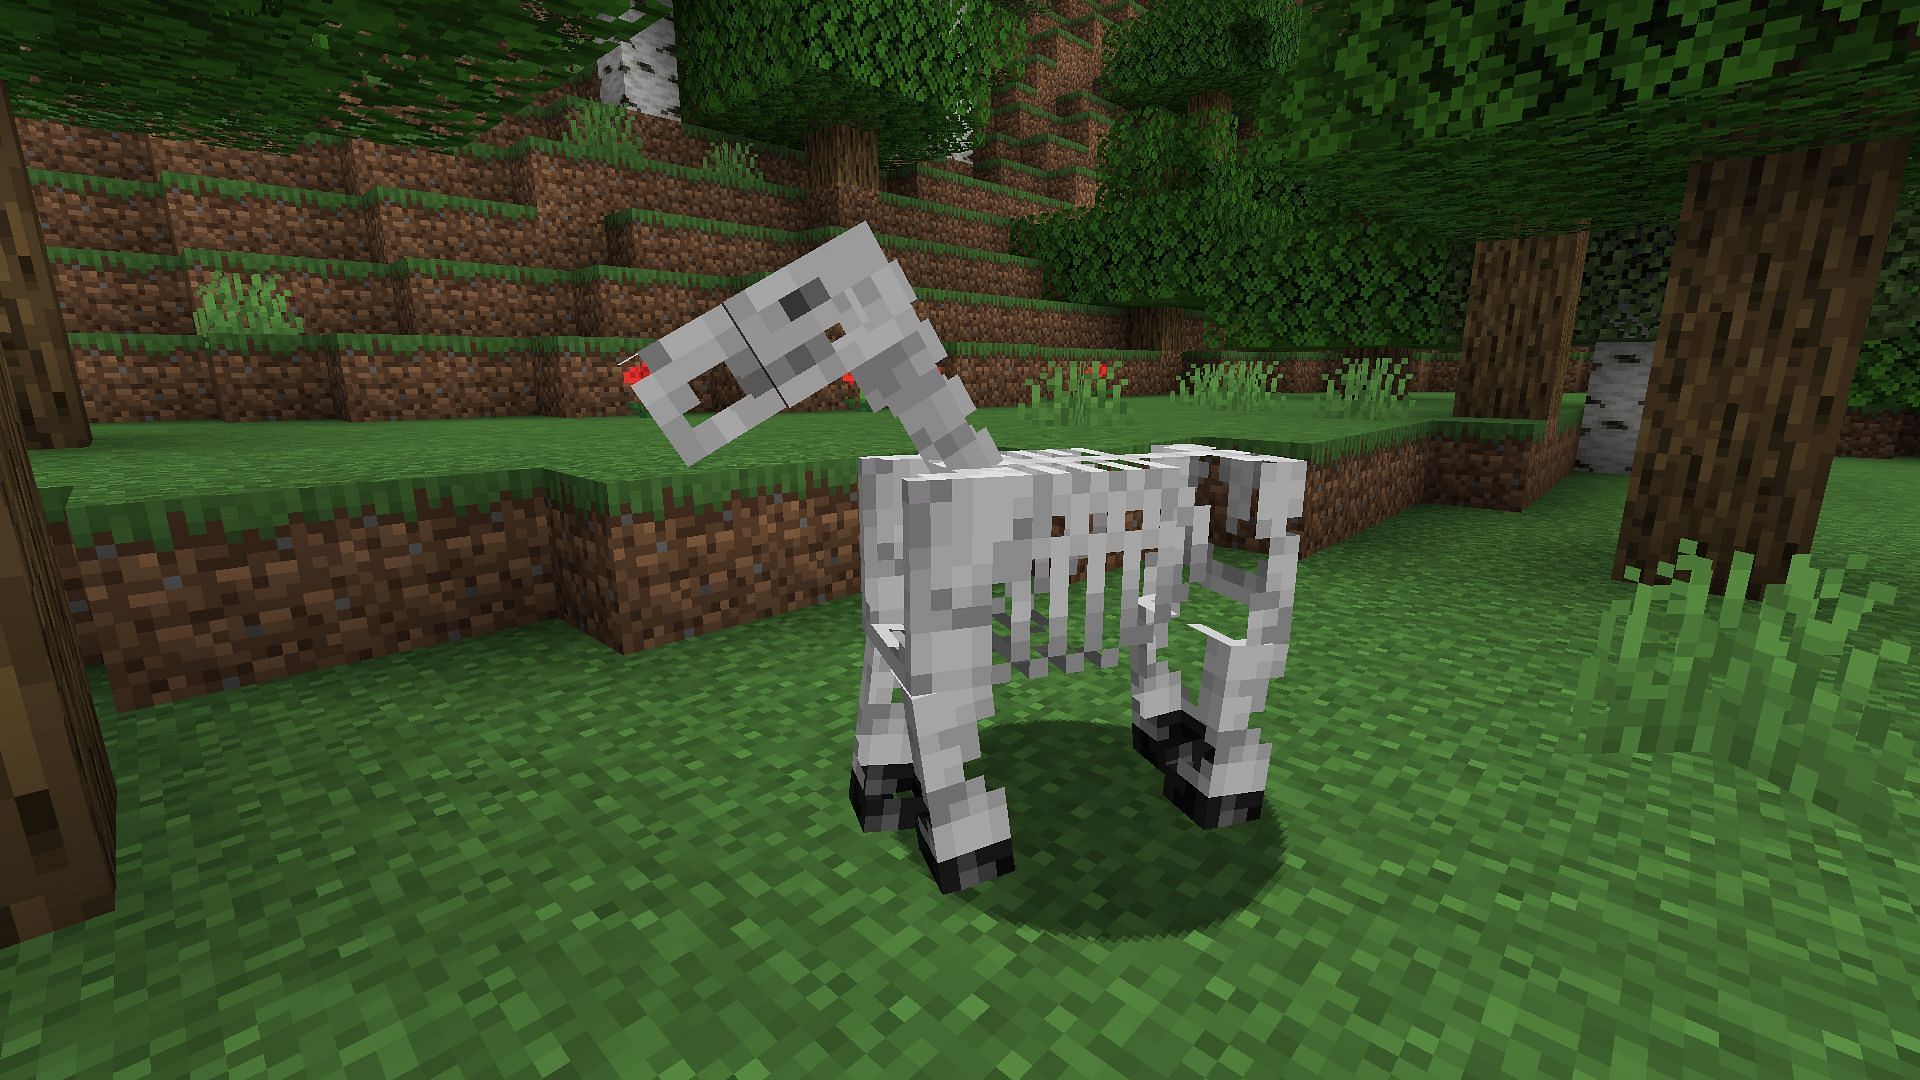 Un cheval squelette dans une forêt (Image via Mojang Studios)